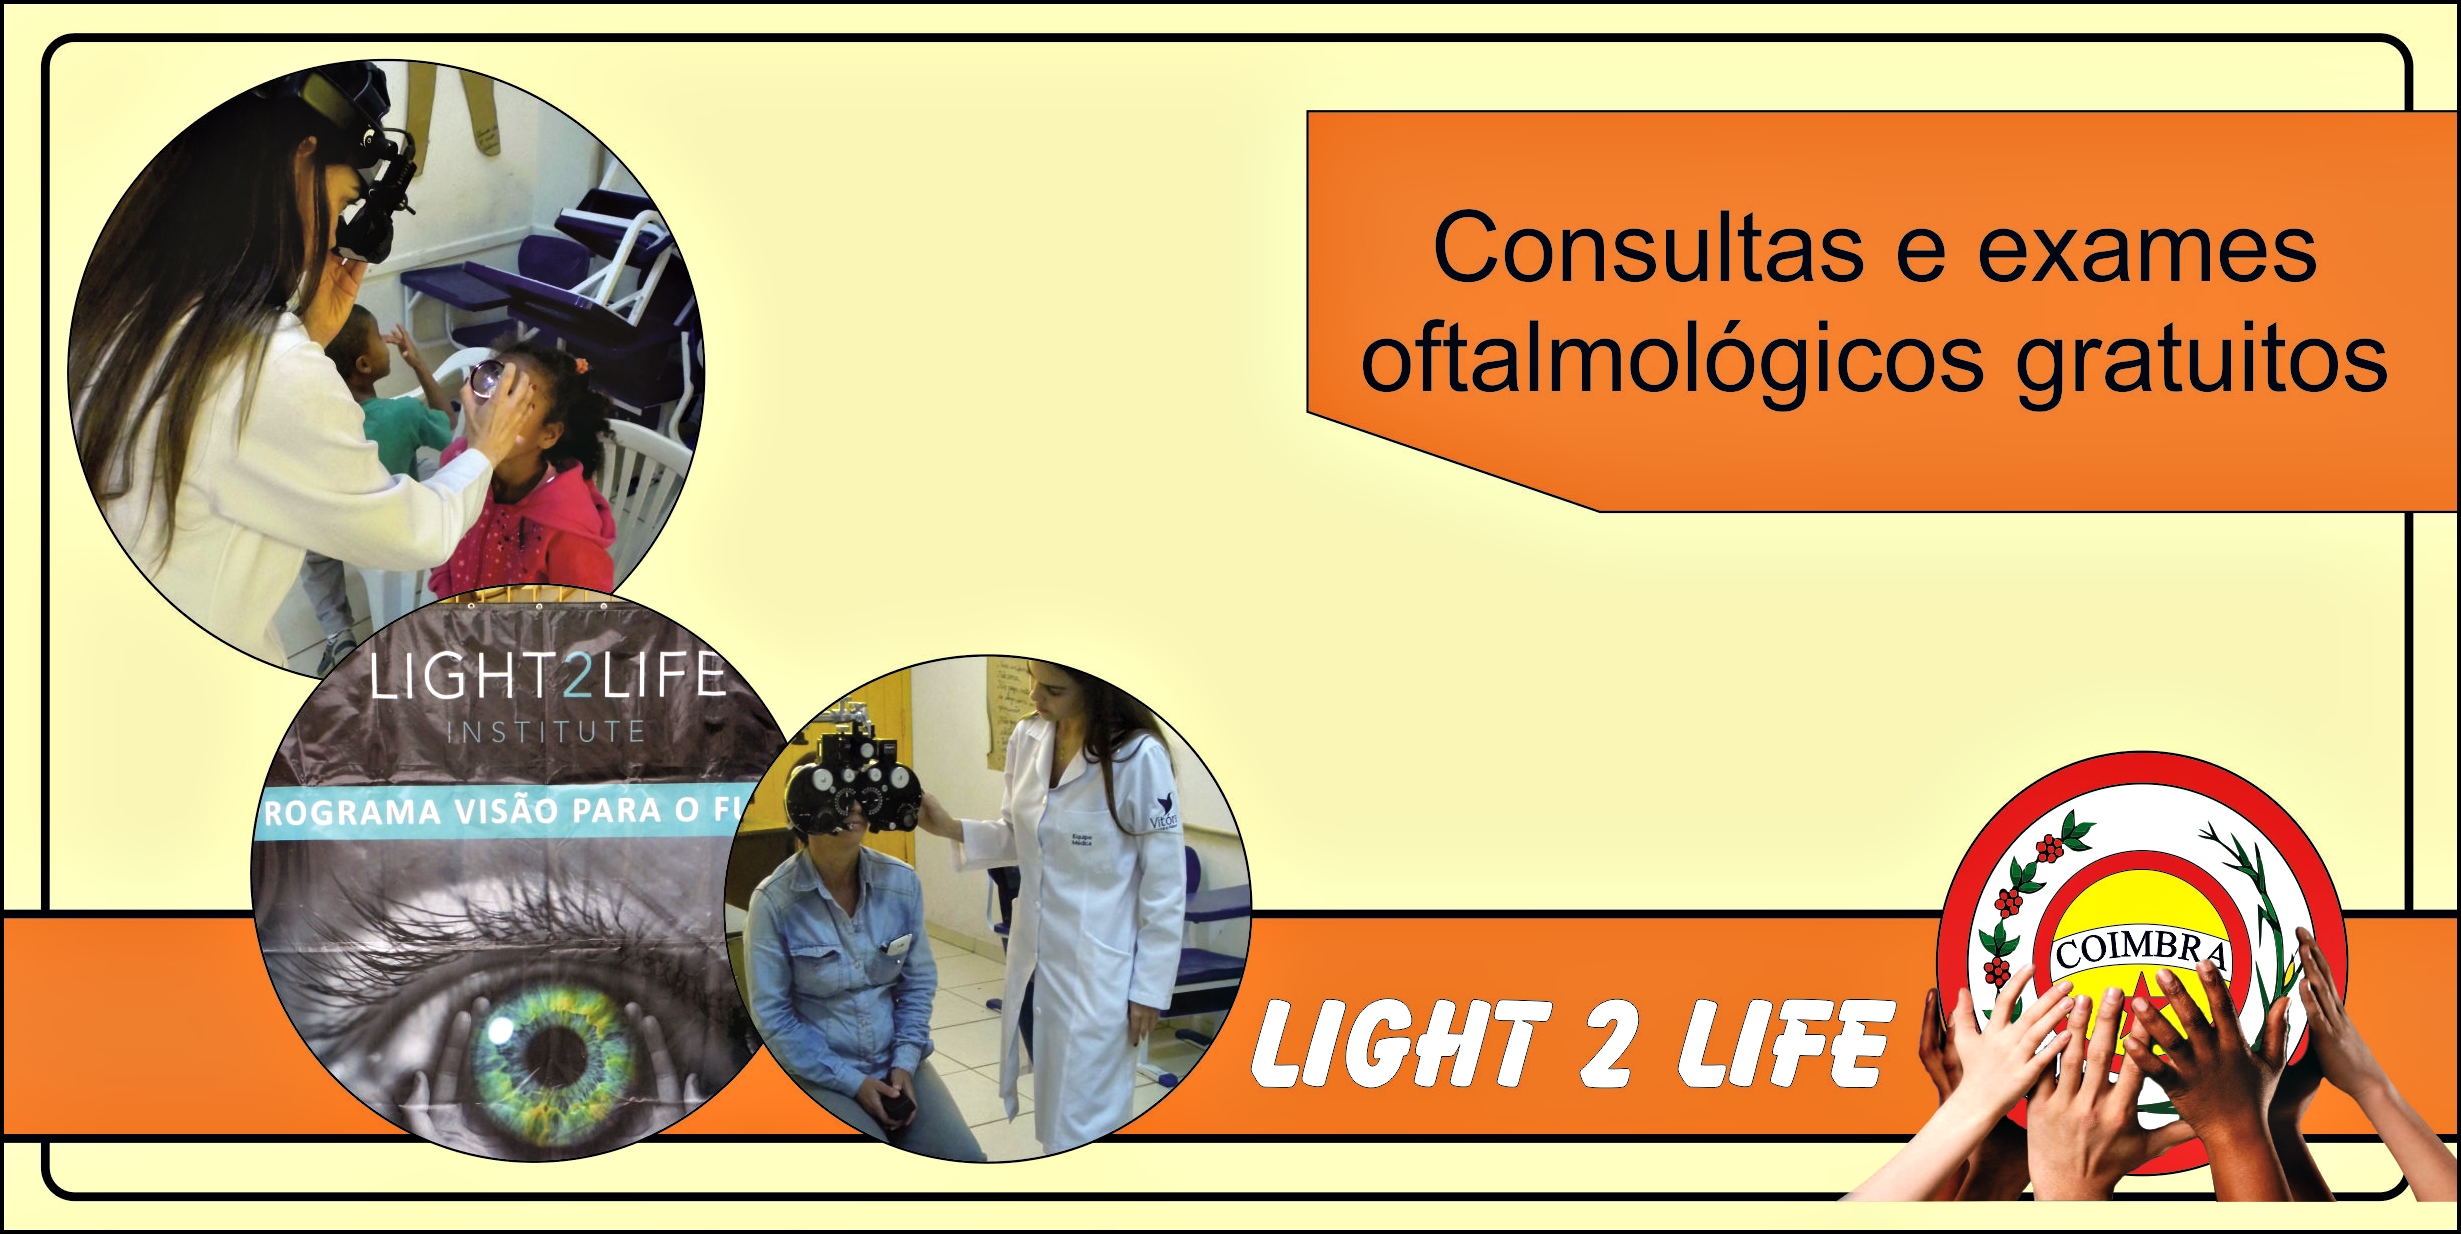 Consultas e exames oftalmológicos gratuitos: foi um sucesso!